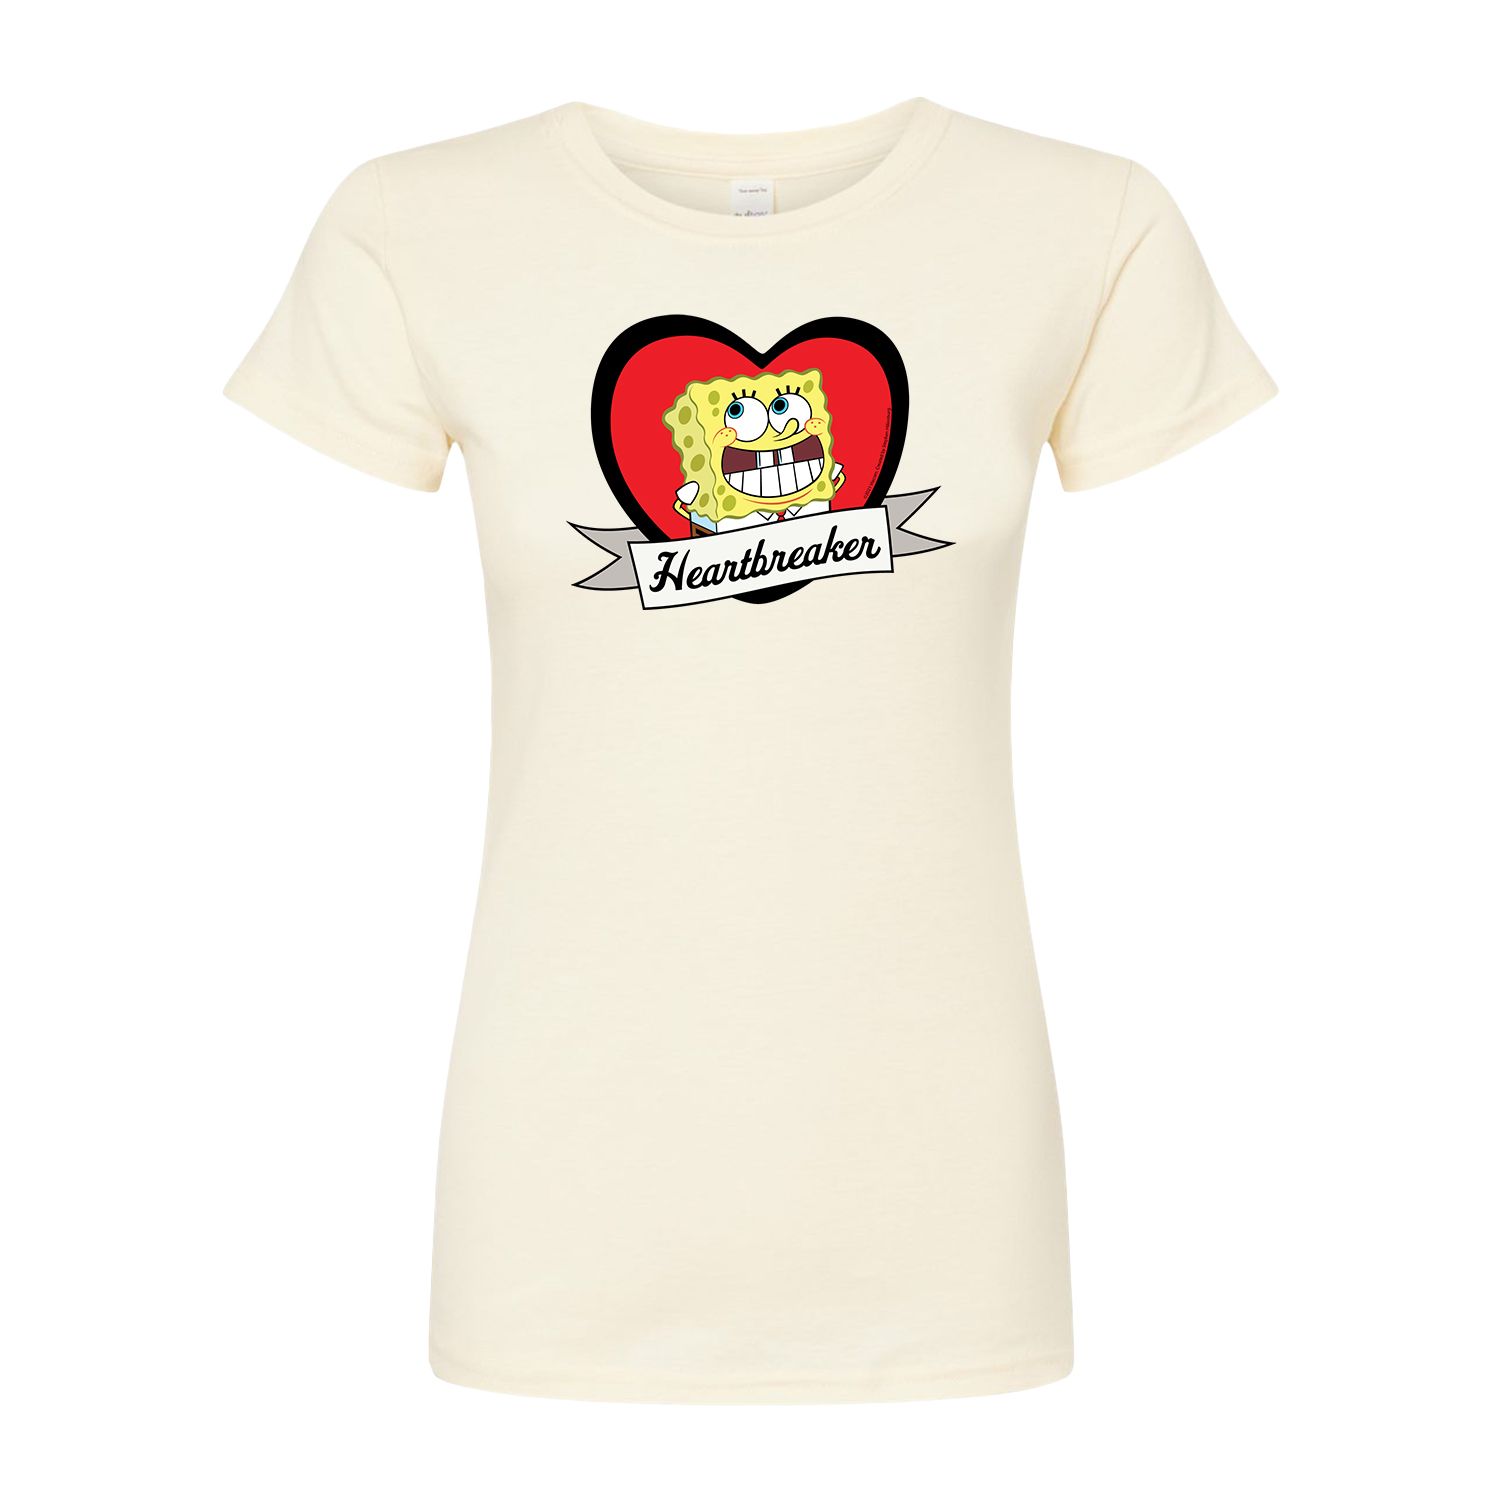 Детская футболка с рисунком Губка Боб «Сердцеед» Licensed Character детская футболка енот сердцеед 128 красный